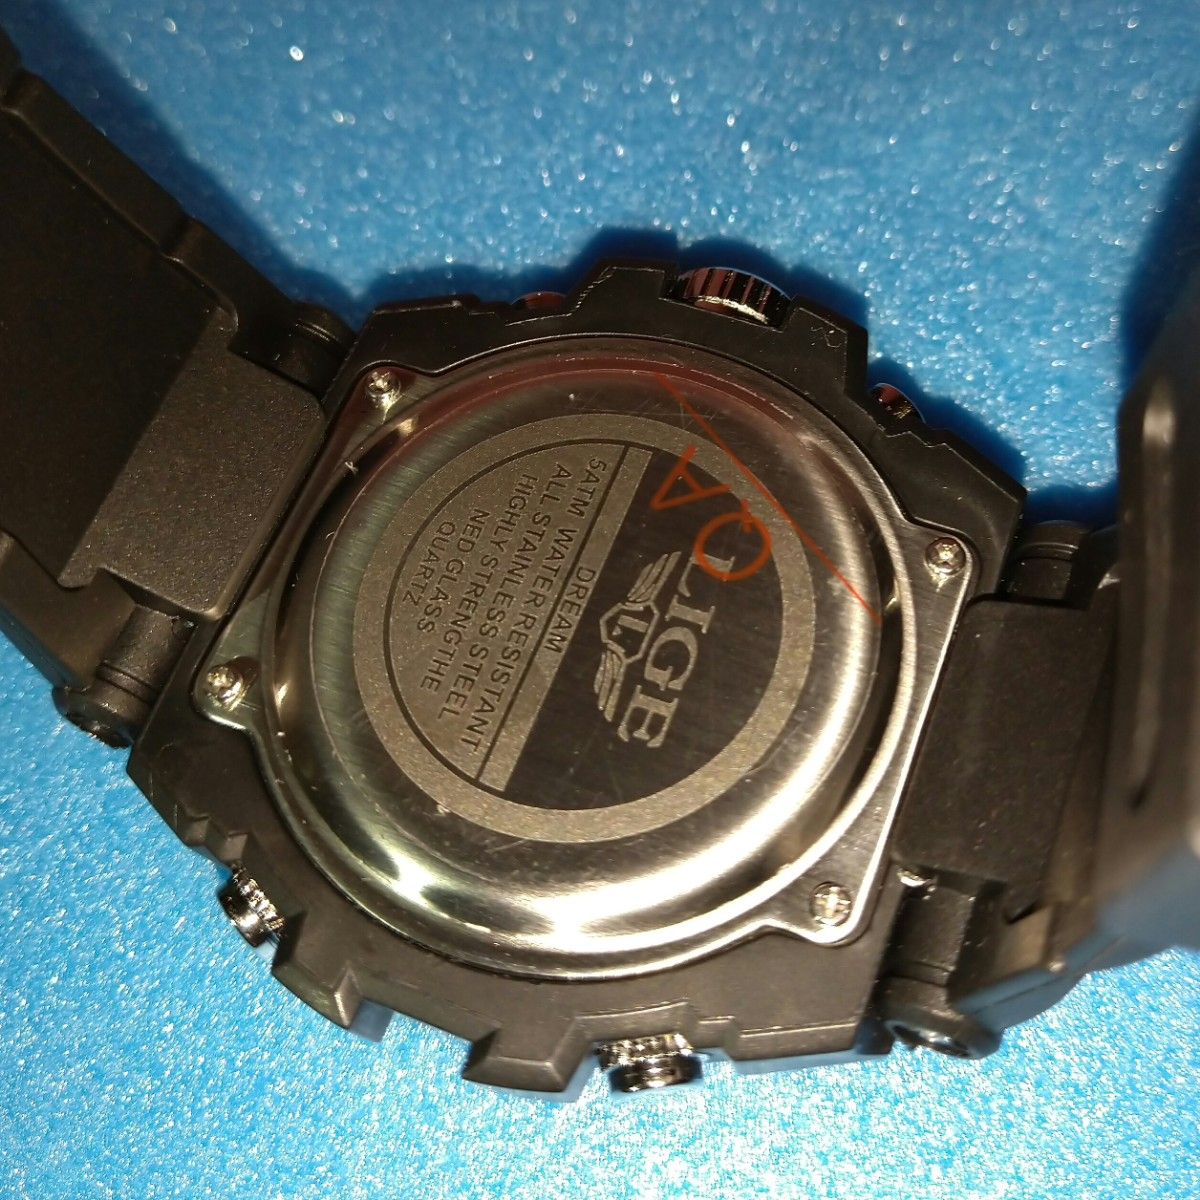 LIGEデジタルミリタリー50m防水メンズスポーツクオーツ腕時計1103